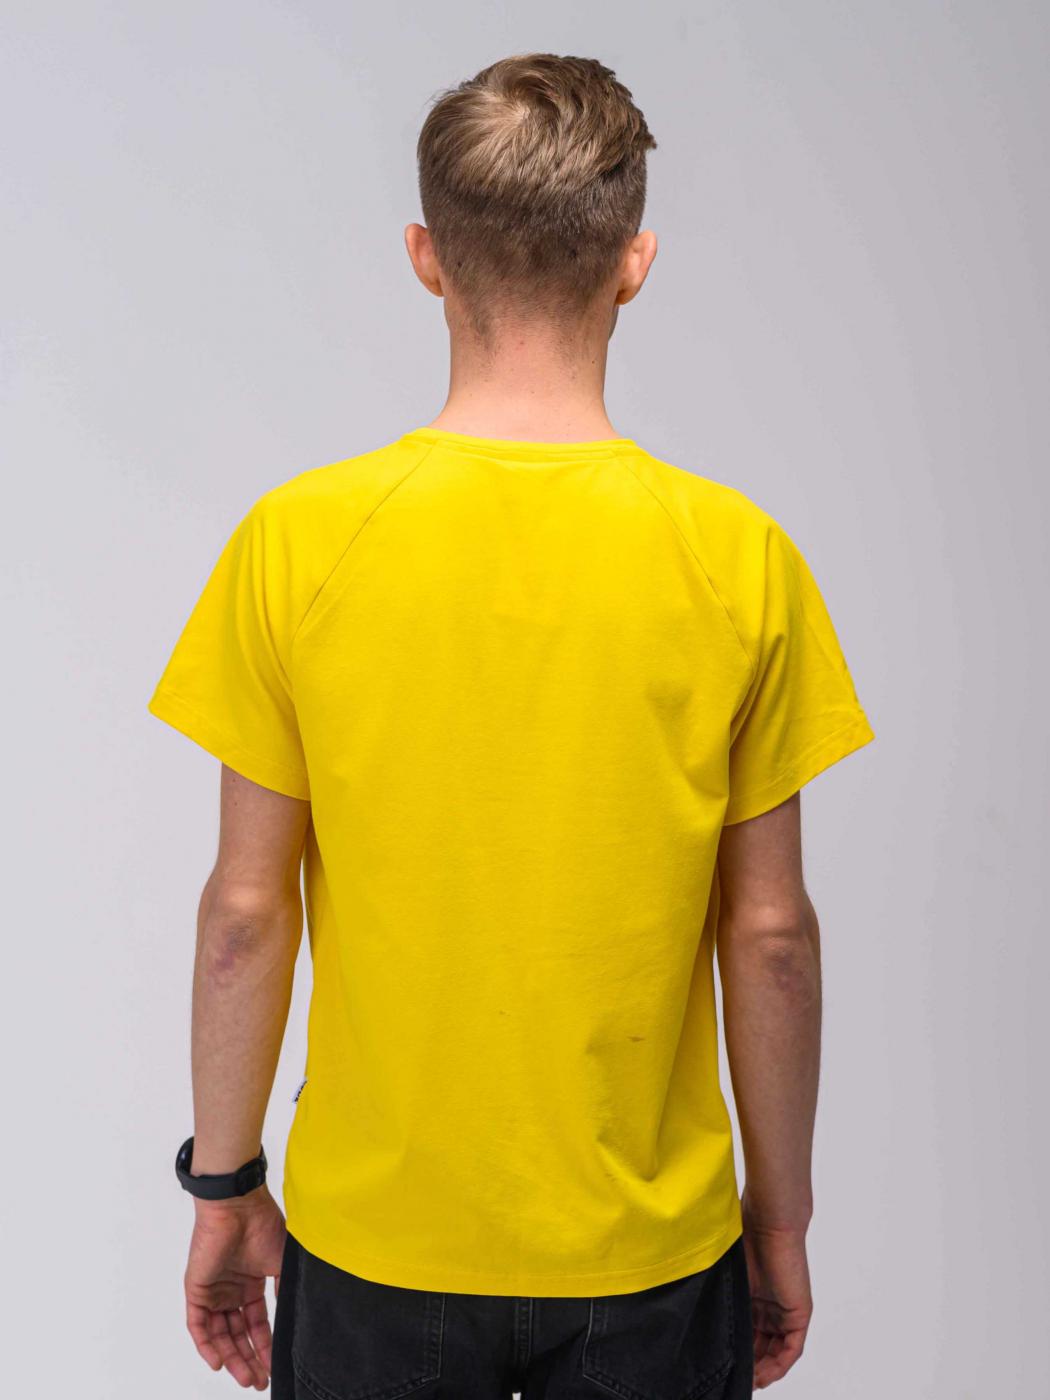 Футболка жовта Бандера Custom Wear  - Фото 5